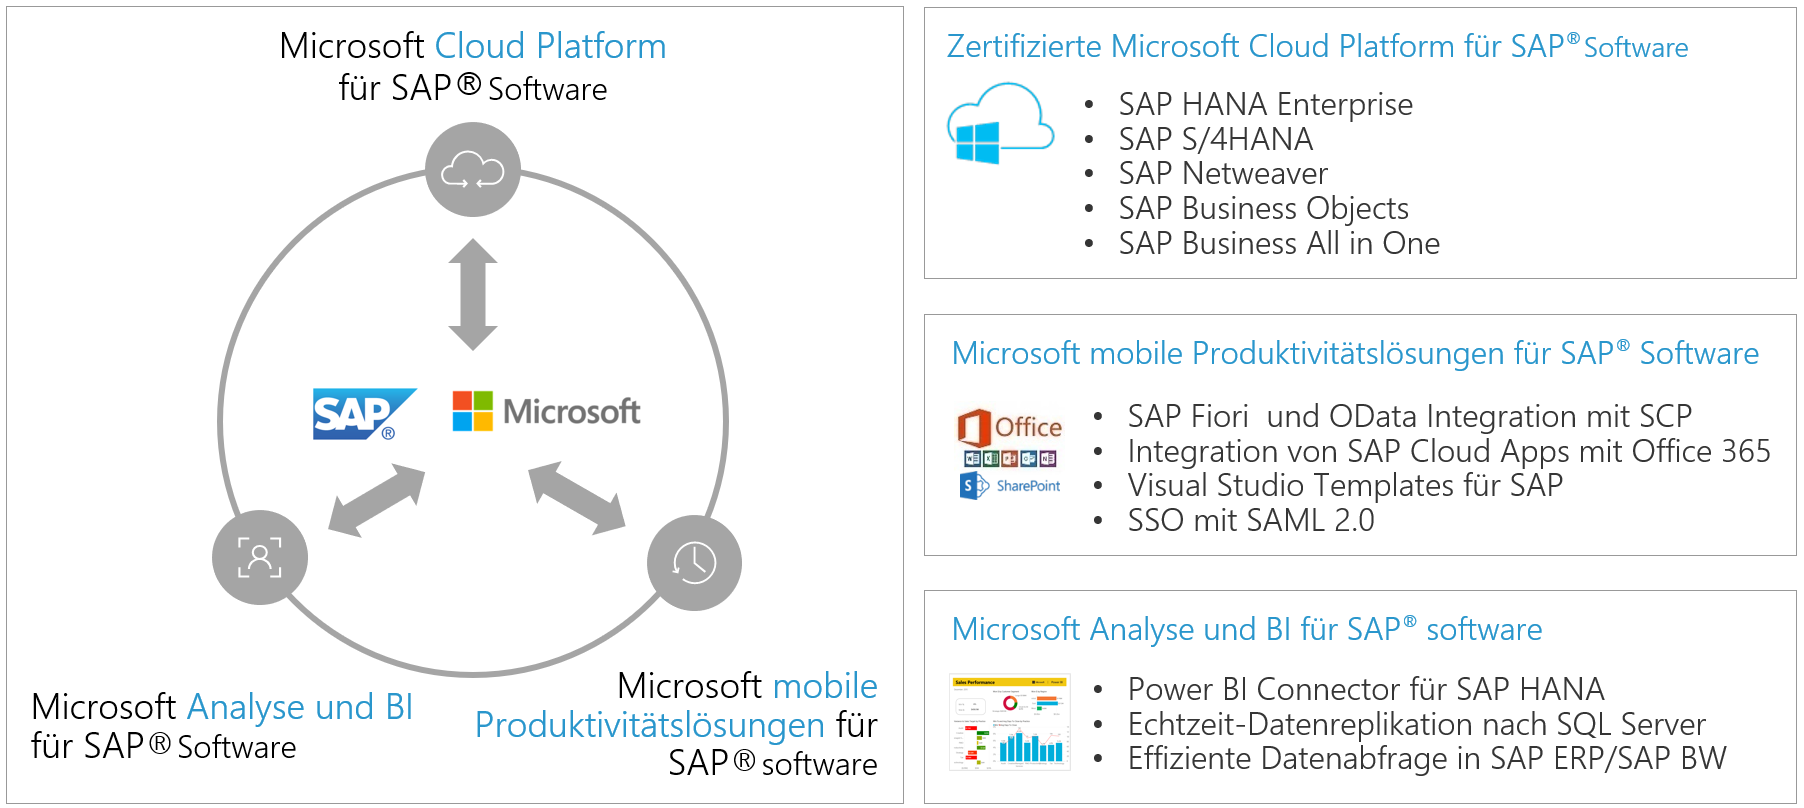 Ihr Vorteil mit Microsoft Azure mit Scheer GmbH